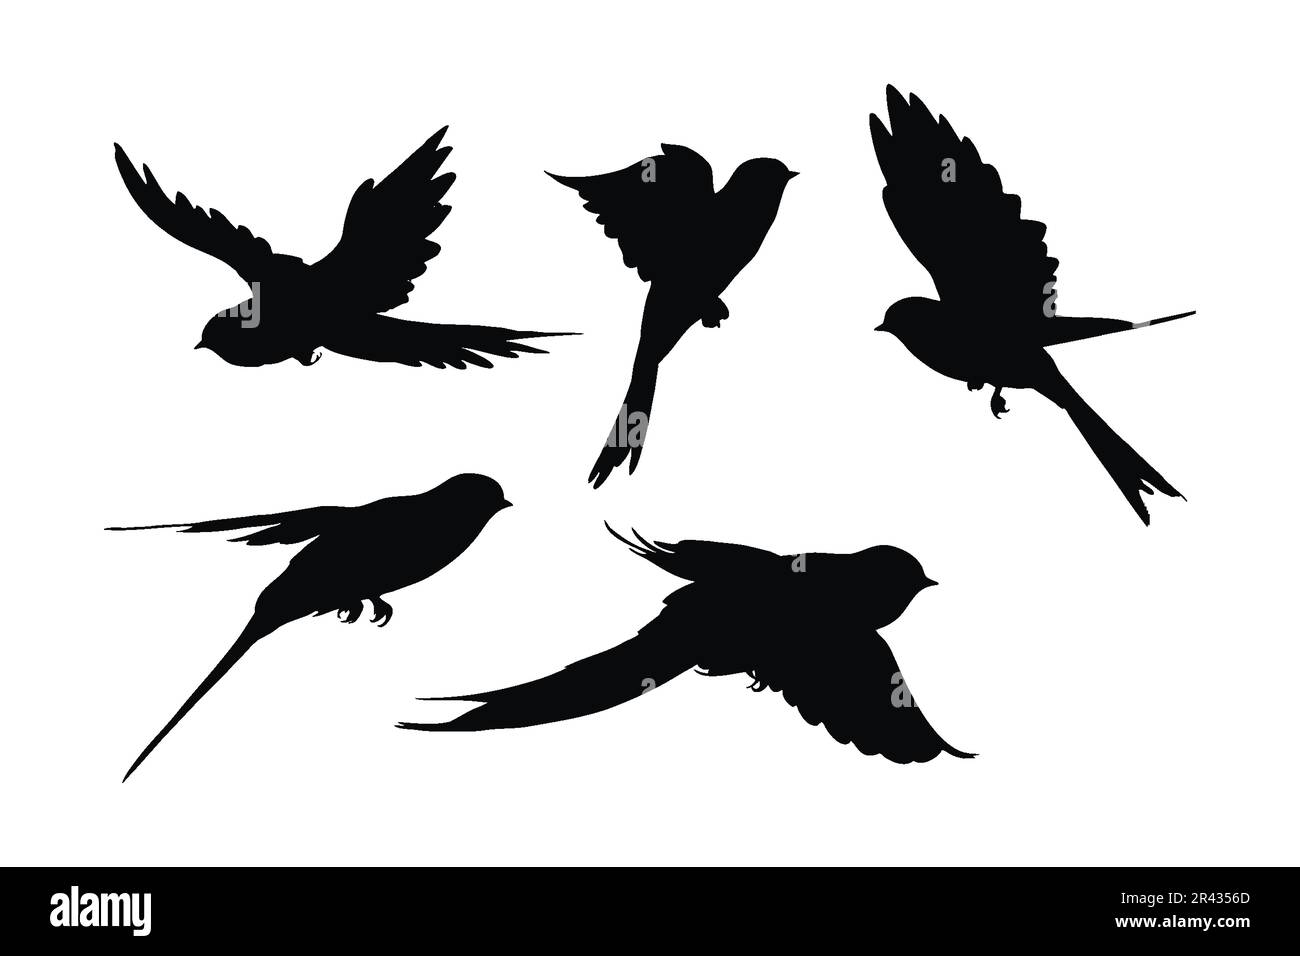 Design a fascio di silhouette volanti Swallows. Disegno vettoriale Wild Swallows su sfondo bianco. Splendido vettore di silhouette volanti per uccelli. uccello piccolo i Illustrazione Vettoriale